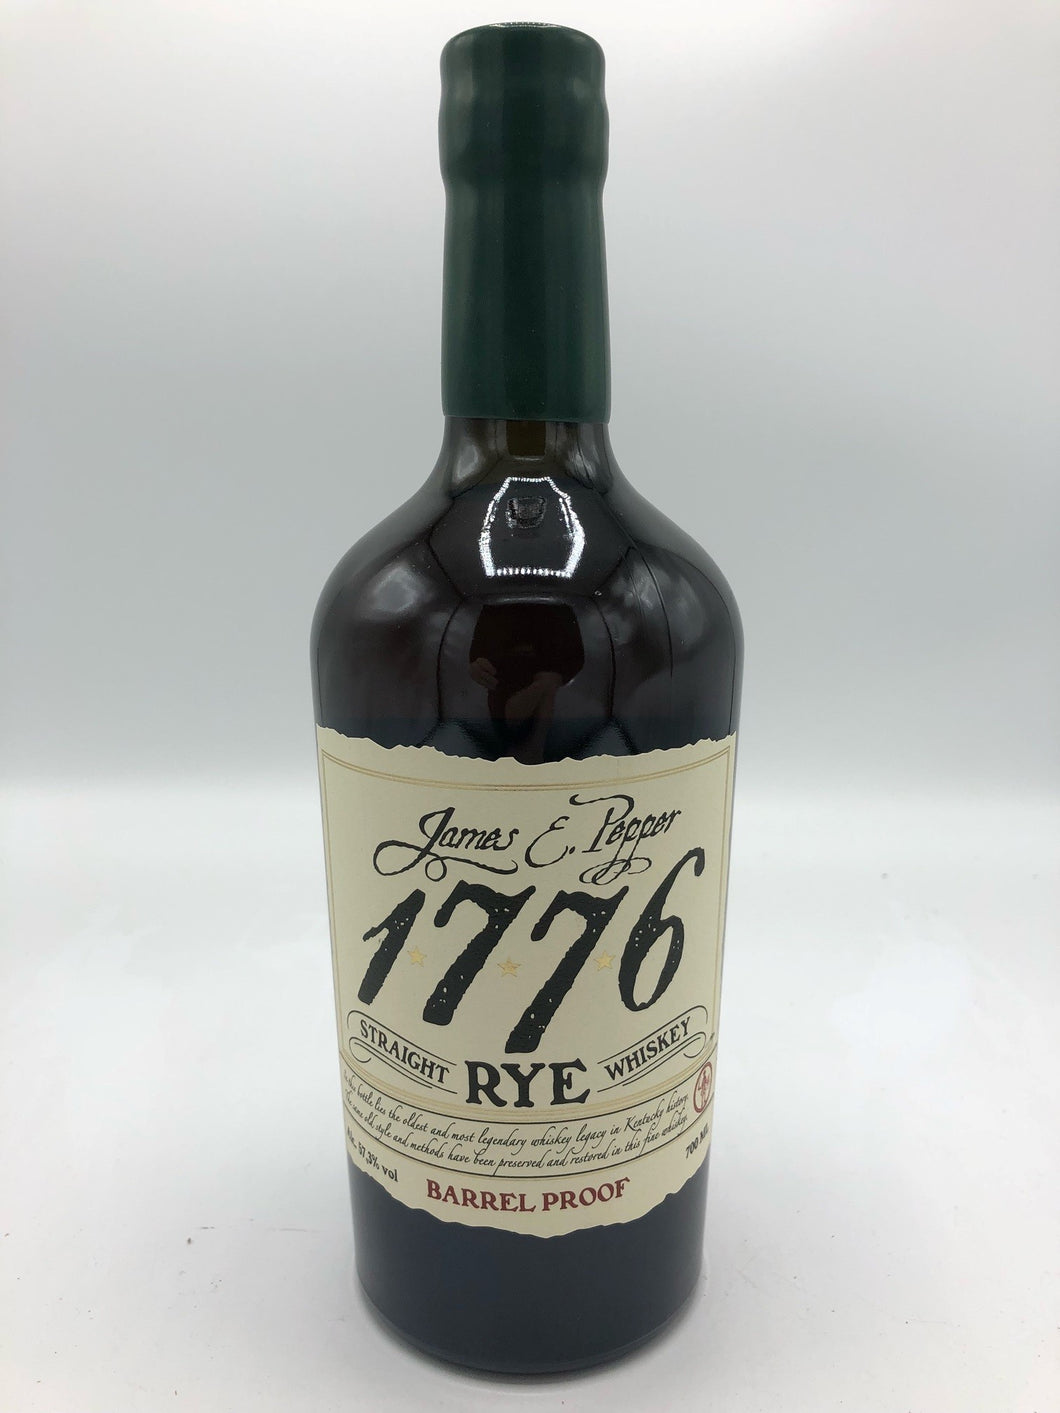 James E Pepper 1776 Barrel Proof Rye Whiskey